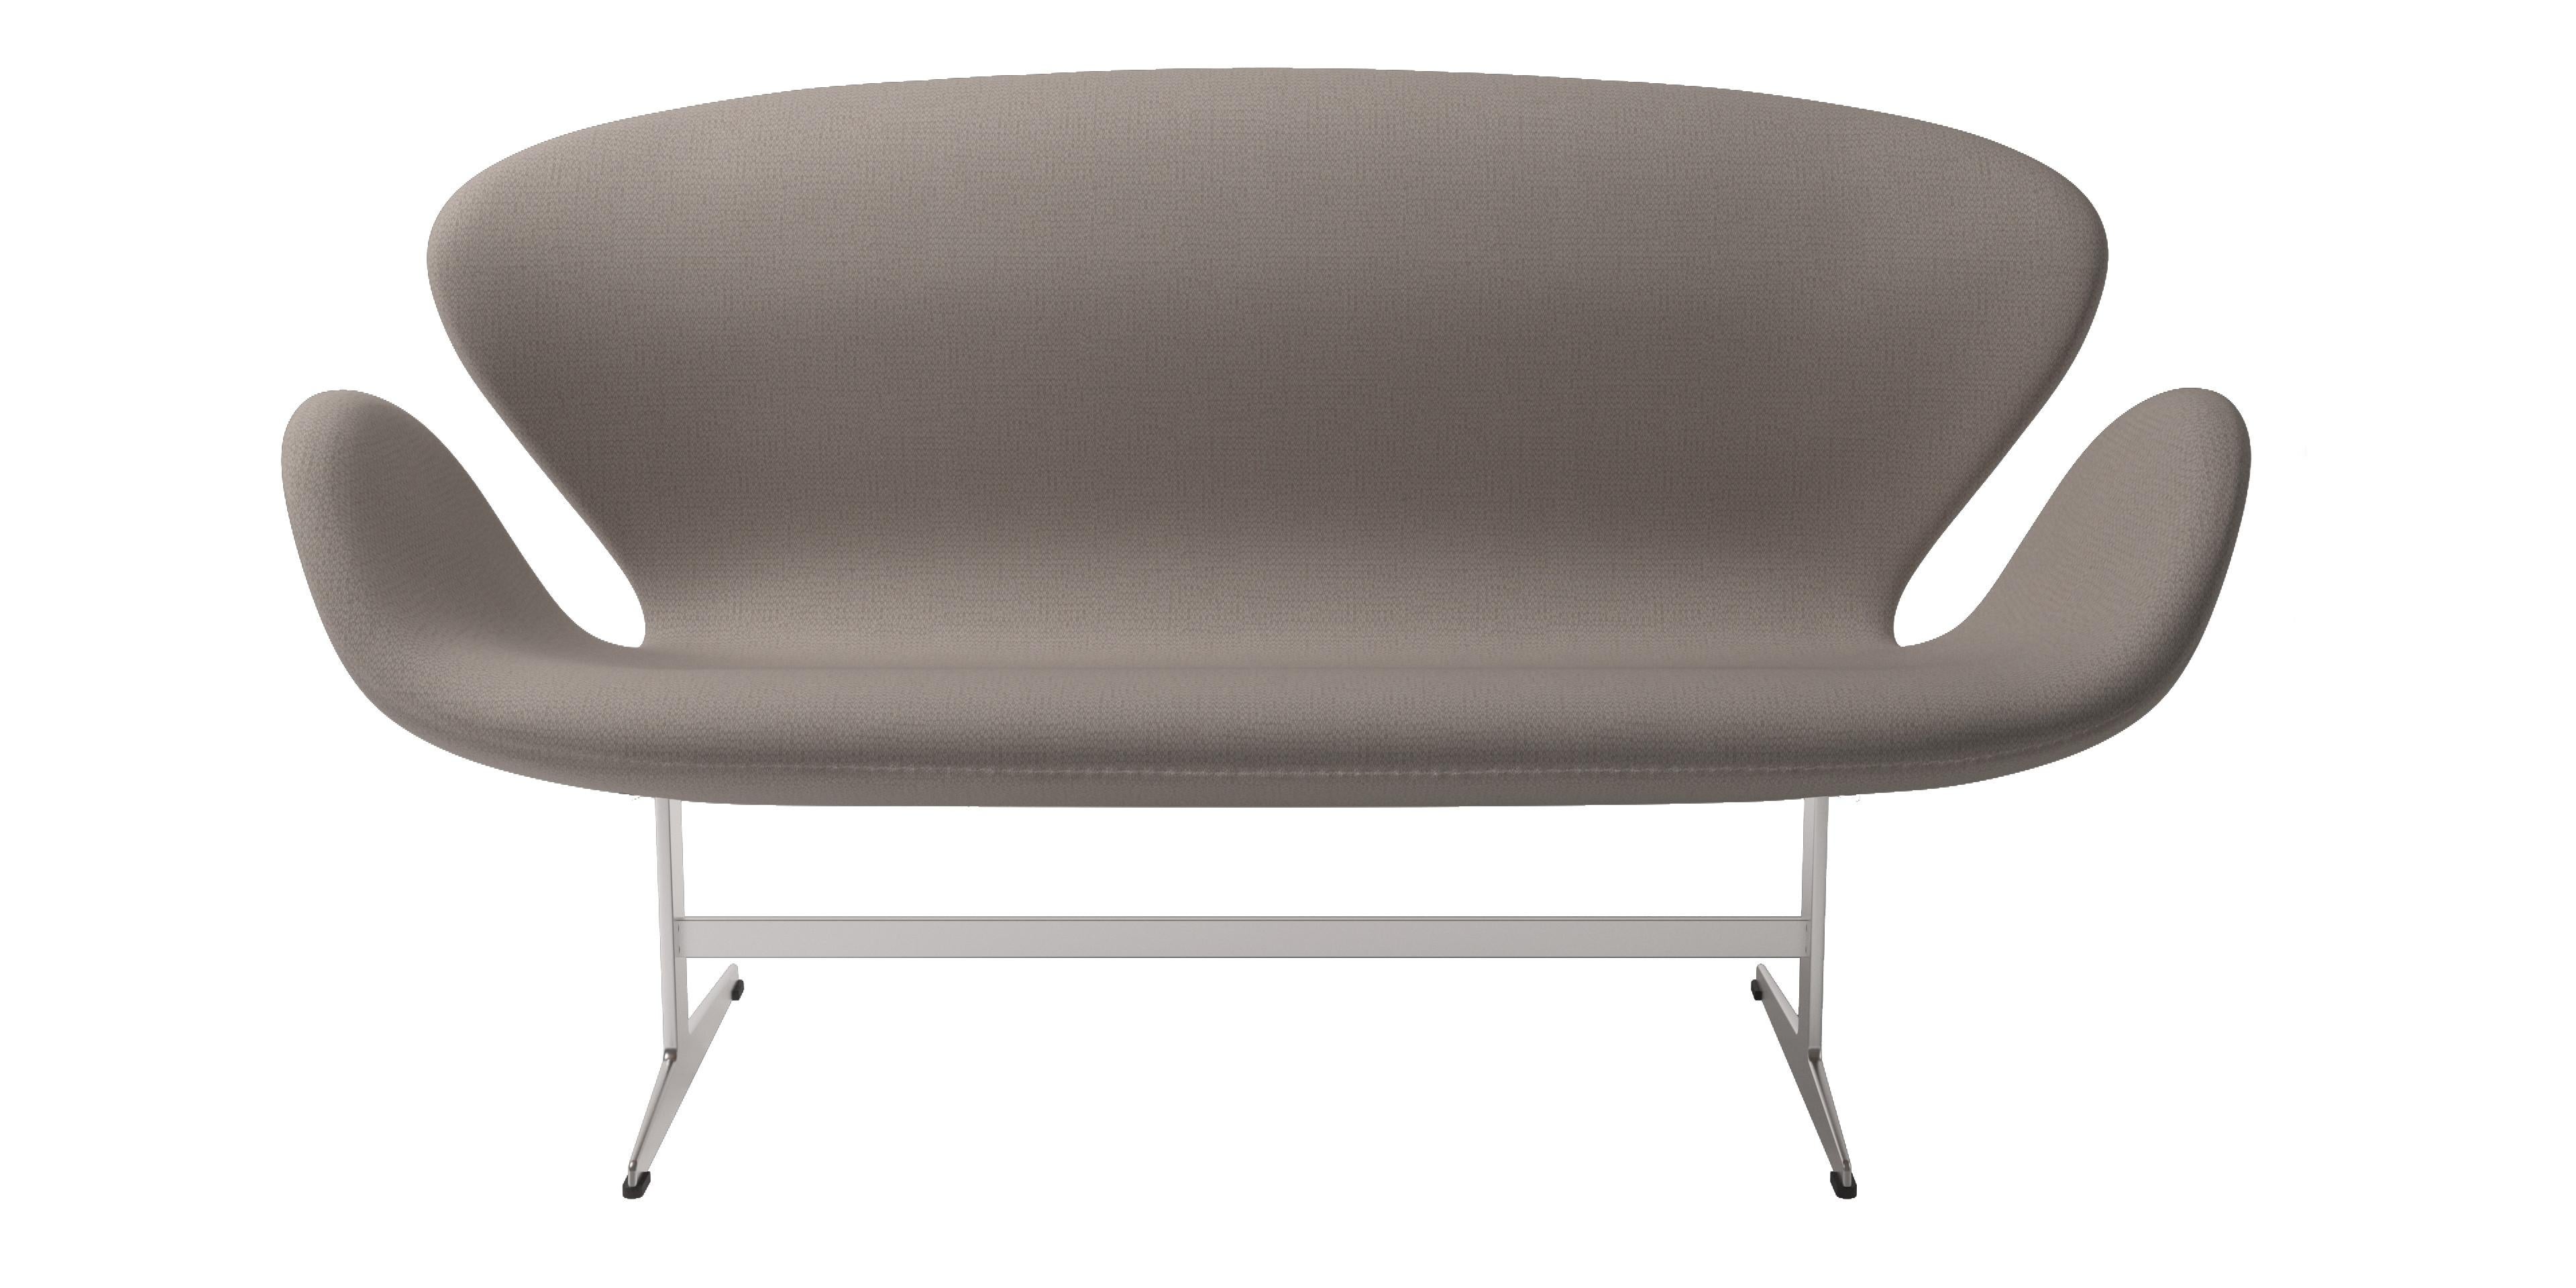 Arne Jacobsen 'Swan' Sofa for Fritz Hansen in Christianshavn Fabric Upholstery For Sale 3